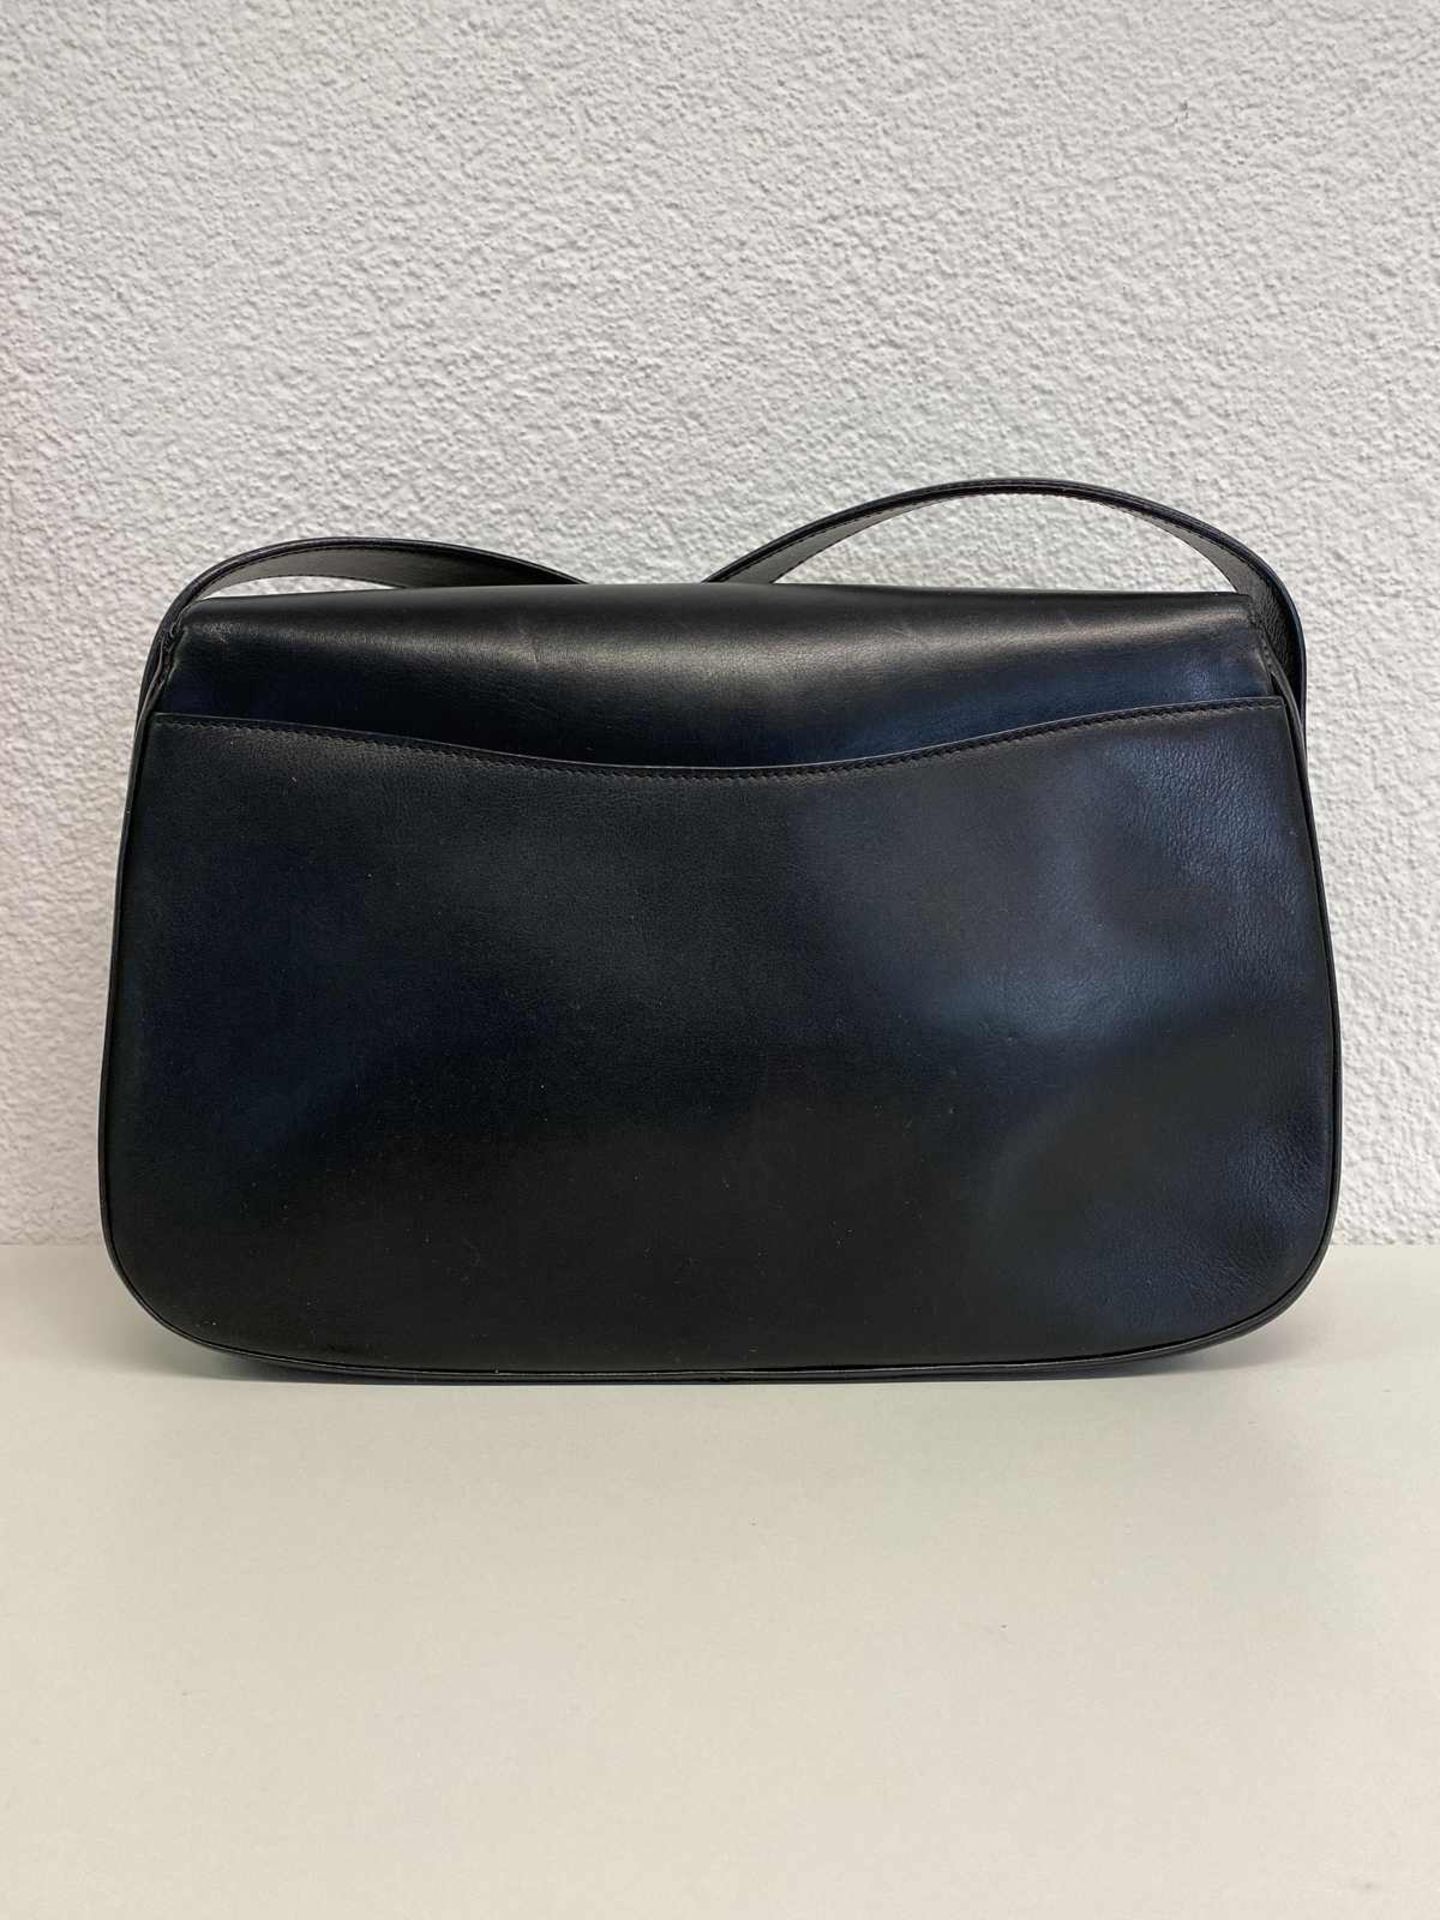 CARTIER Handtasche Modell Panthère, schöne Schultertasche in feinstem, schwarzem Leder mit blauem - Bild 4 aus 11